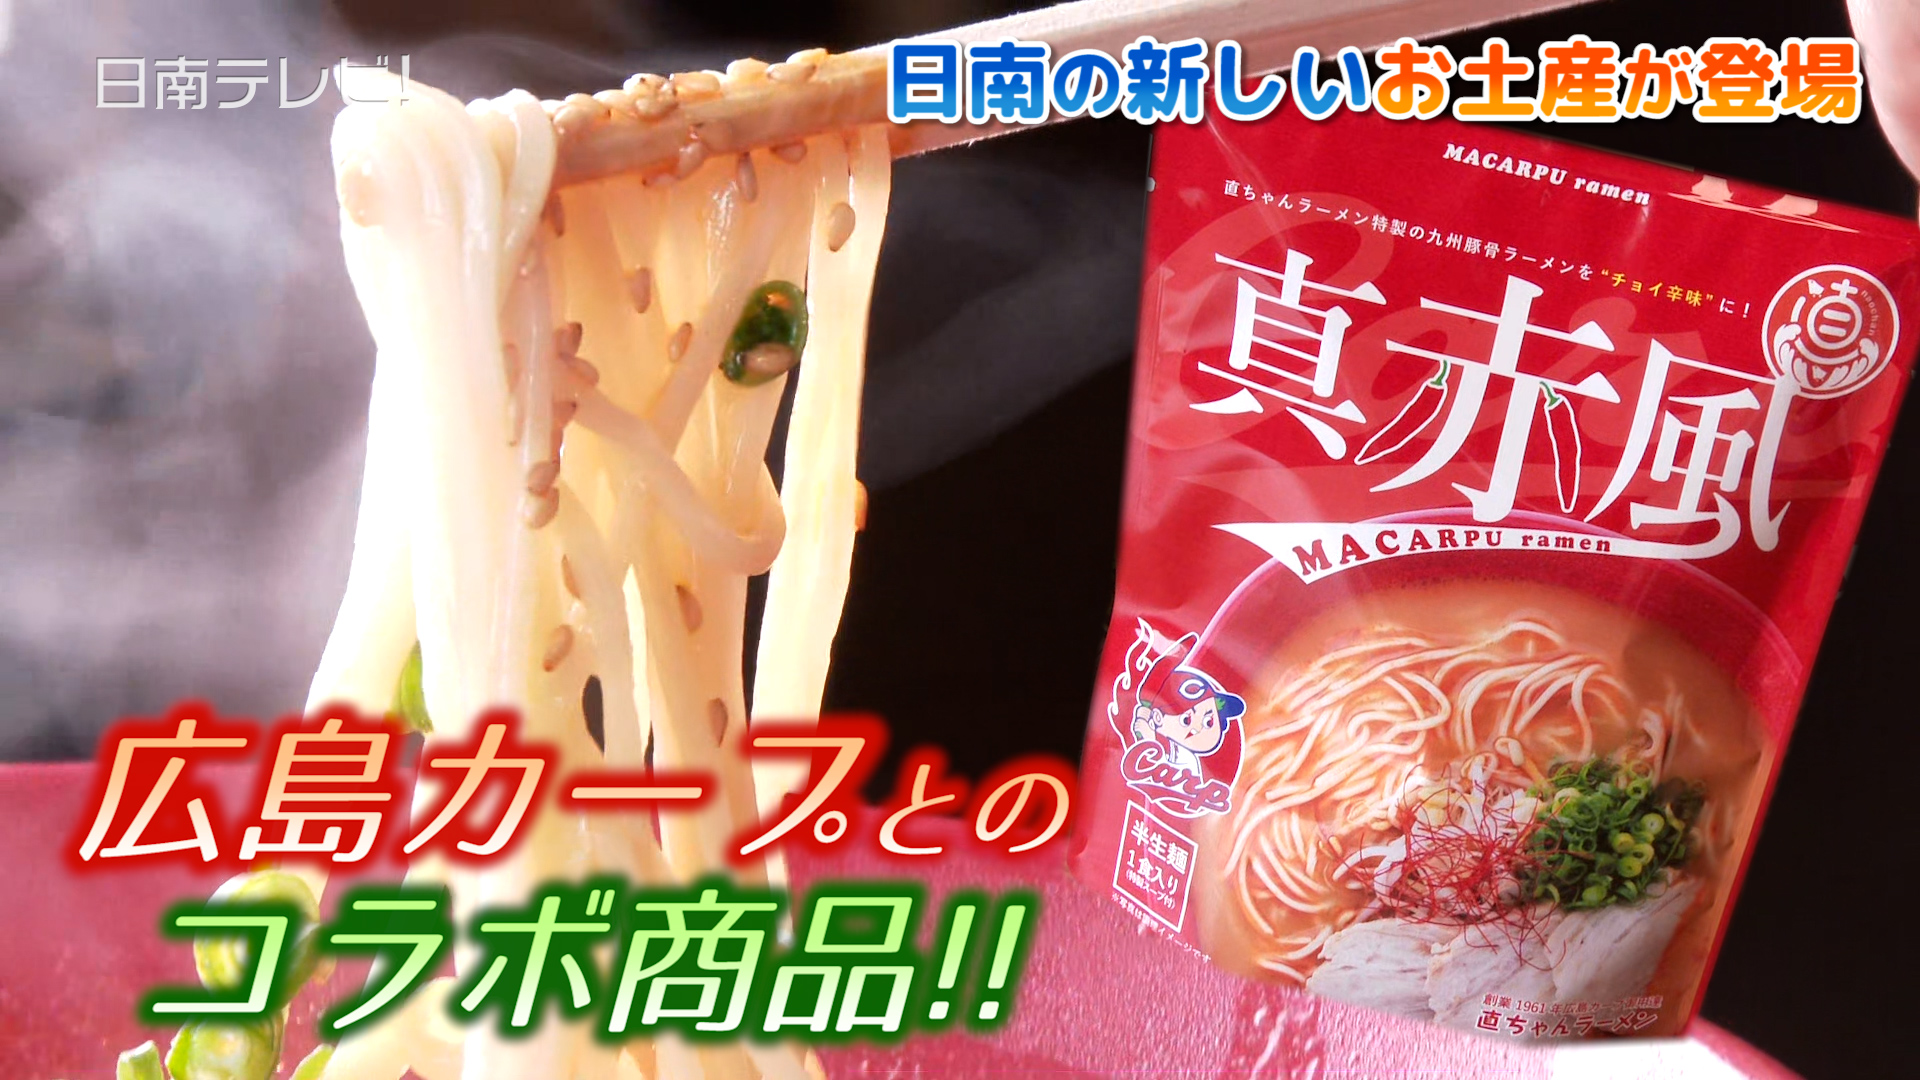 直ちゃんラーメンと広島カープがコラボ「真赤風」袋麺が登場 | 日南 